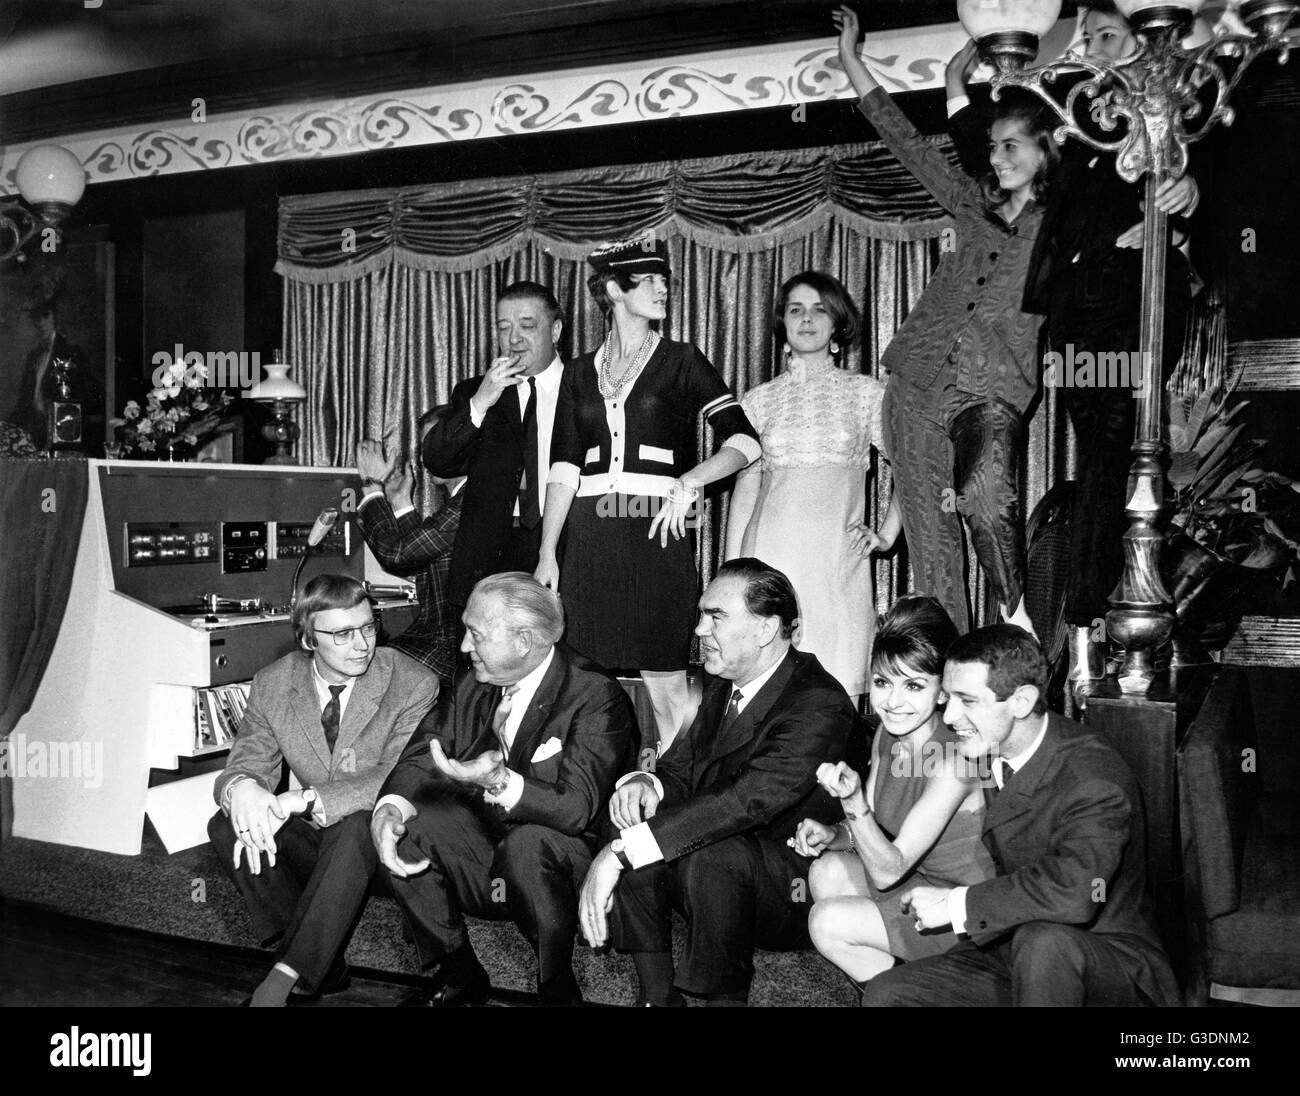 Unternehmer Hans Herbert Blatzheim (2. c. l., sitzend) neben seinem Freund Max Schmeling bei der Eröffnung des 'Crazy Club' à Nürnberg, Allemagne 1960 er Jahre. Banque D'Images